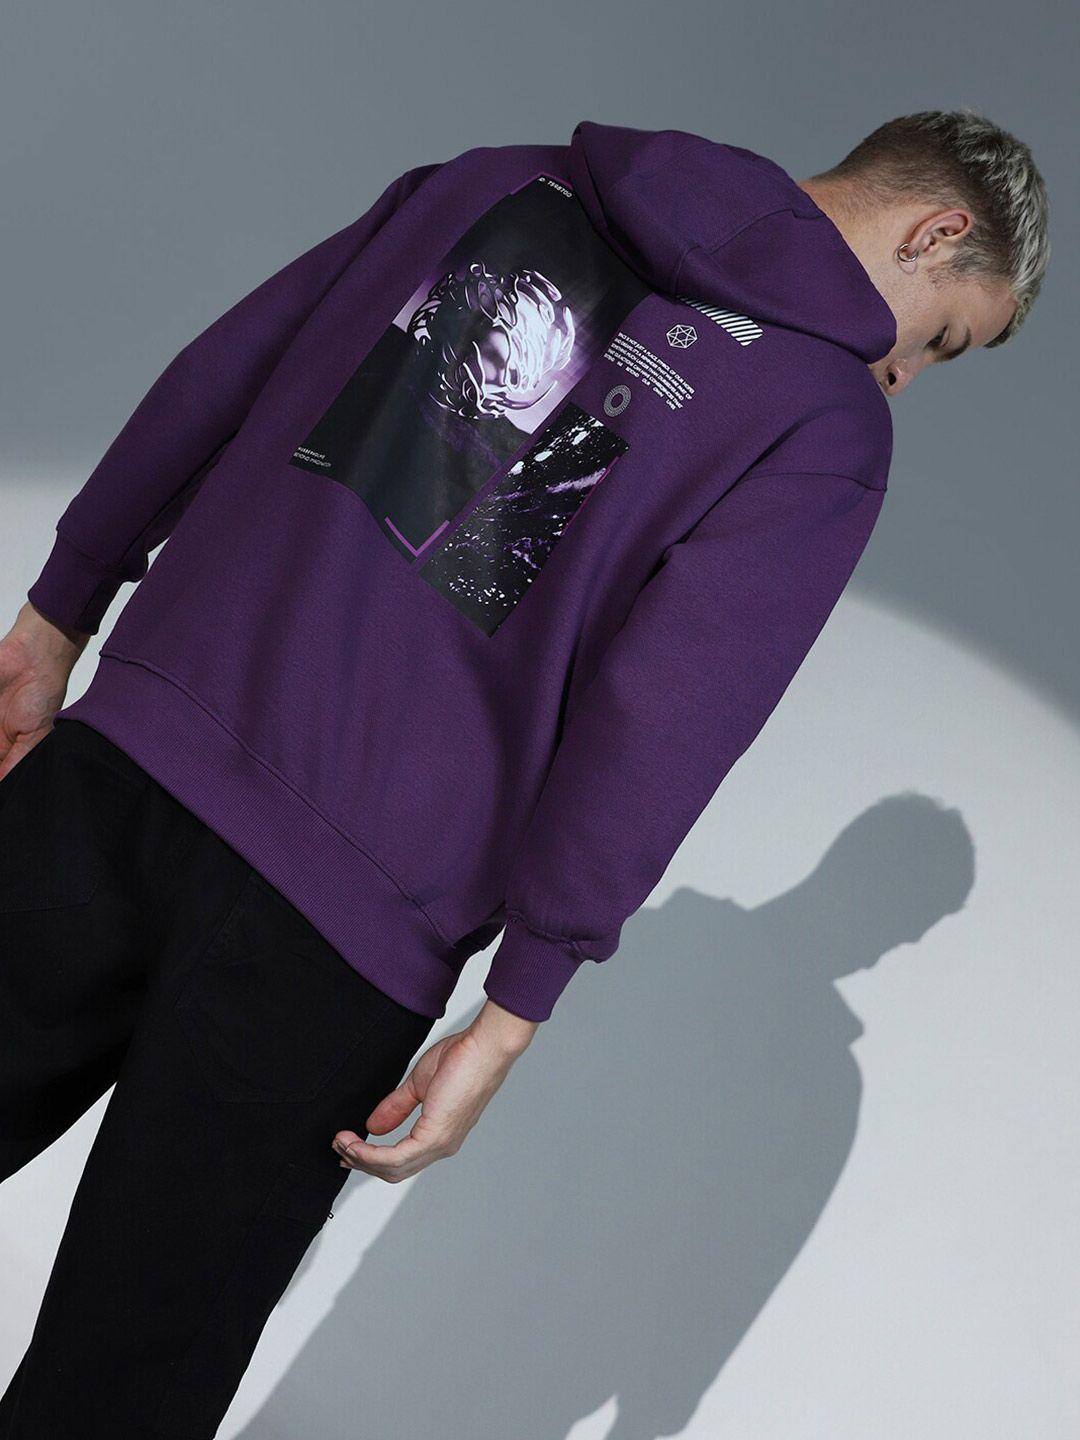 hubberholme-graphic-printed-hooded-long-sleeves-sweatshirt